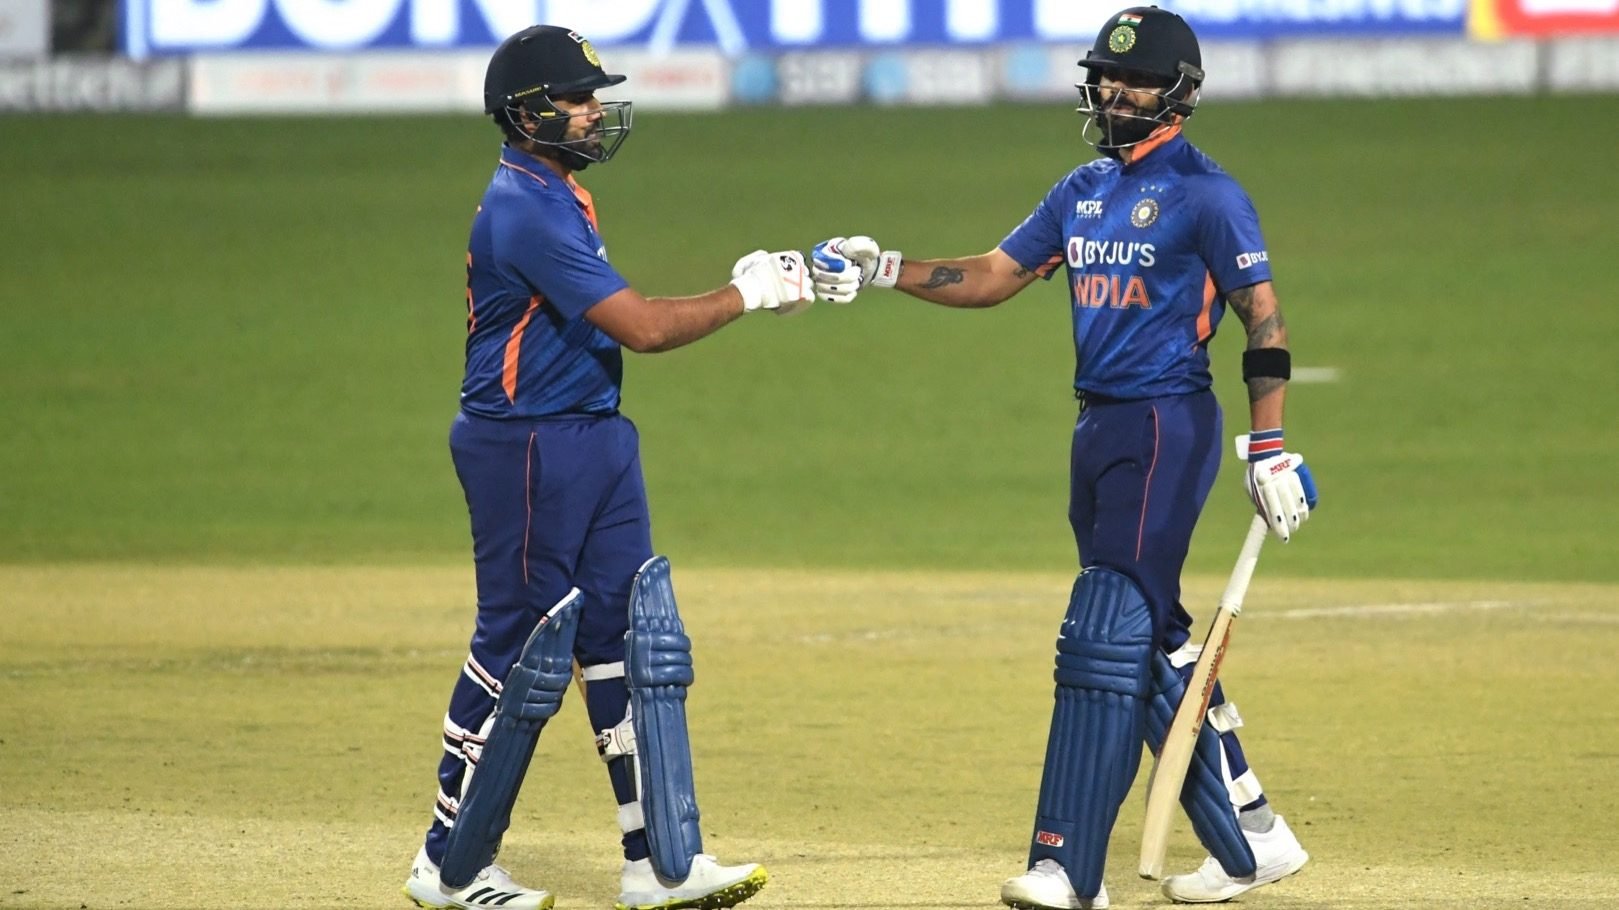 Asia Cup में खुल गयी भारतीय बल्लेबाजों की कलई, टी20 वर्ल्ड कप से पहले भारत की ताकत बन गयी सबसे बड़ी कमजोरी